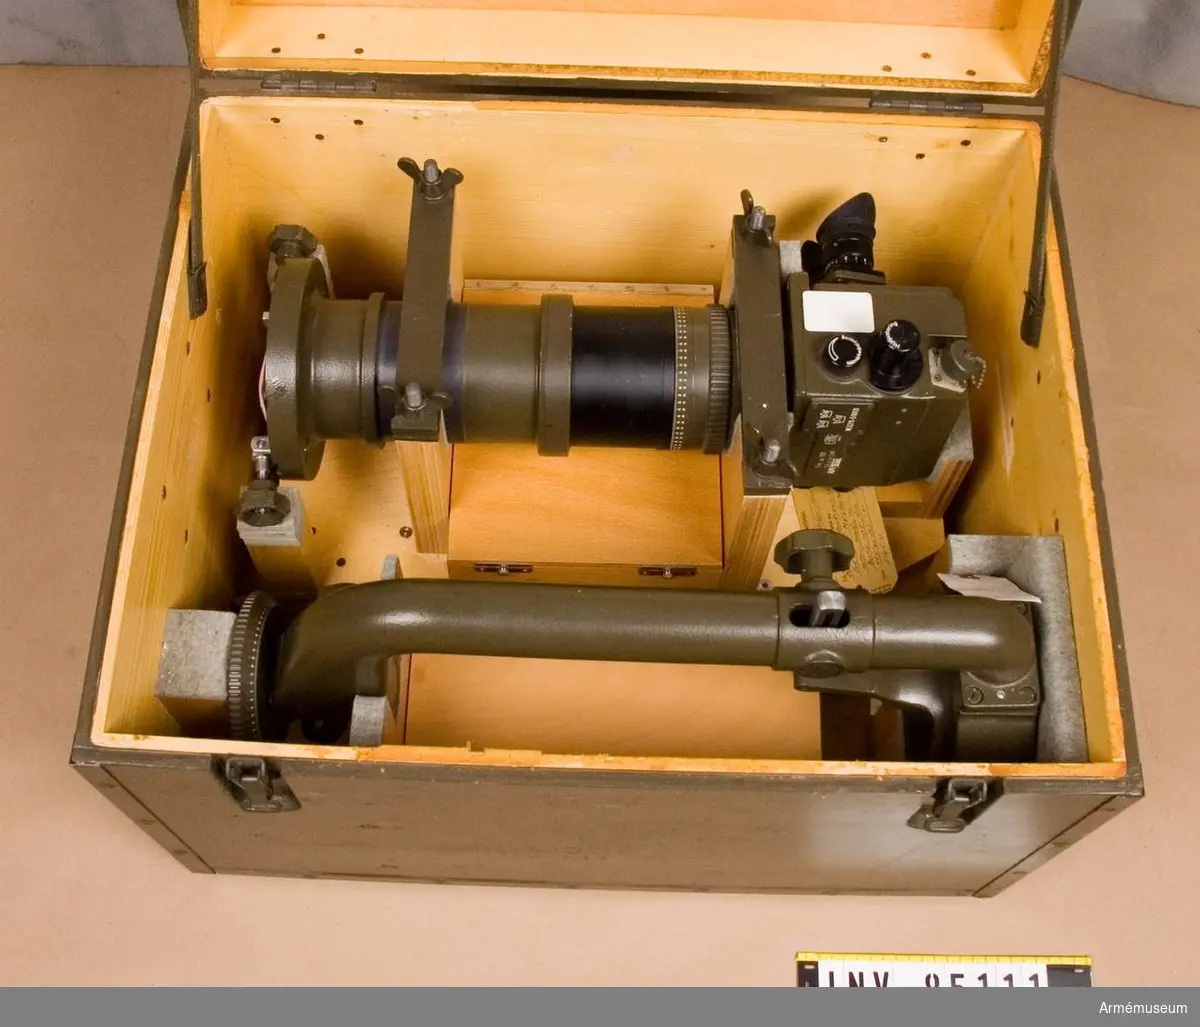 1960-tal. Avståndsinstrument 101, 1 m, 16x40 "Distea".(M 3211-510111). Består av:  1 bärarm, 1 okulardel.